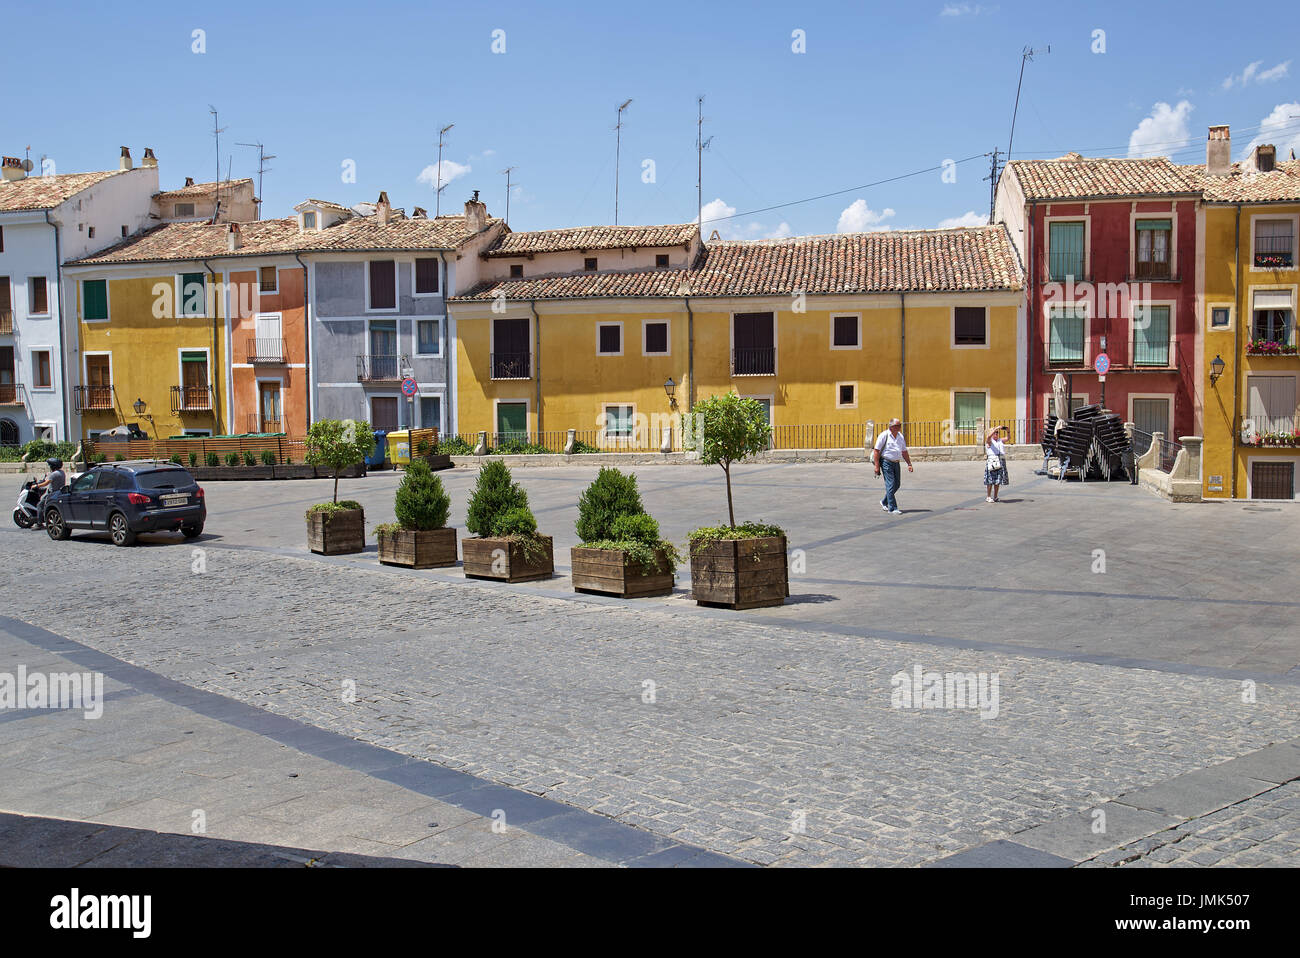 Immagine di Plaza Mayor, posto nella parte anteriore della Cattedrale di Cuenca, con la caratteristica facciata di colore case. Cuenca, Castilla La Mancha, in Spagna. Foto Stock